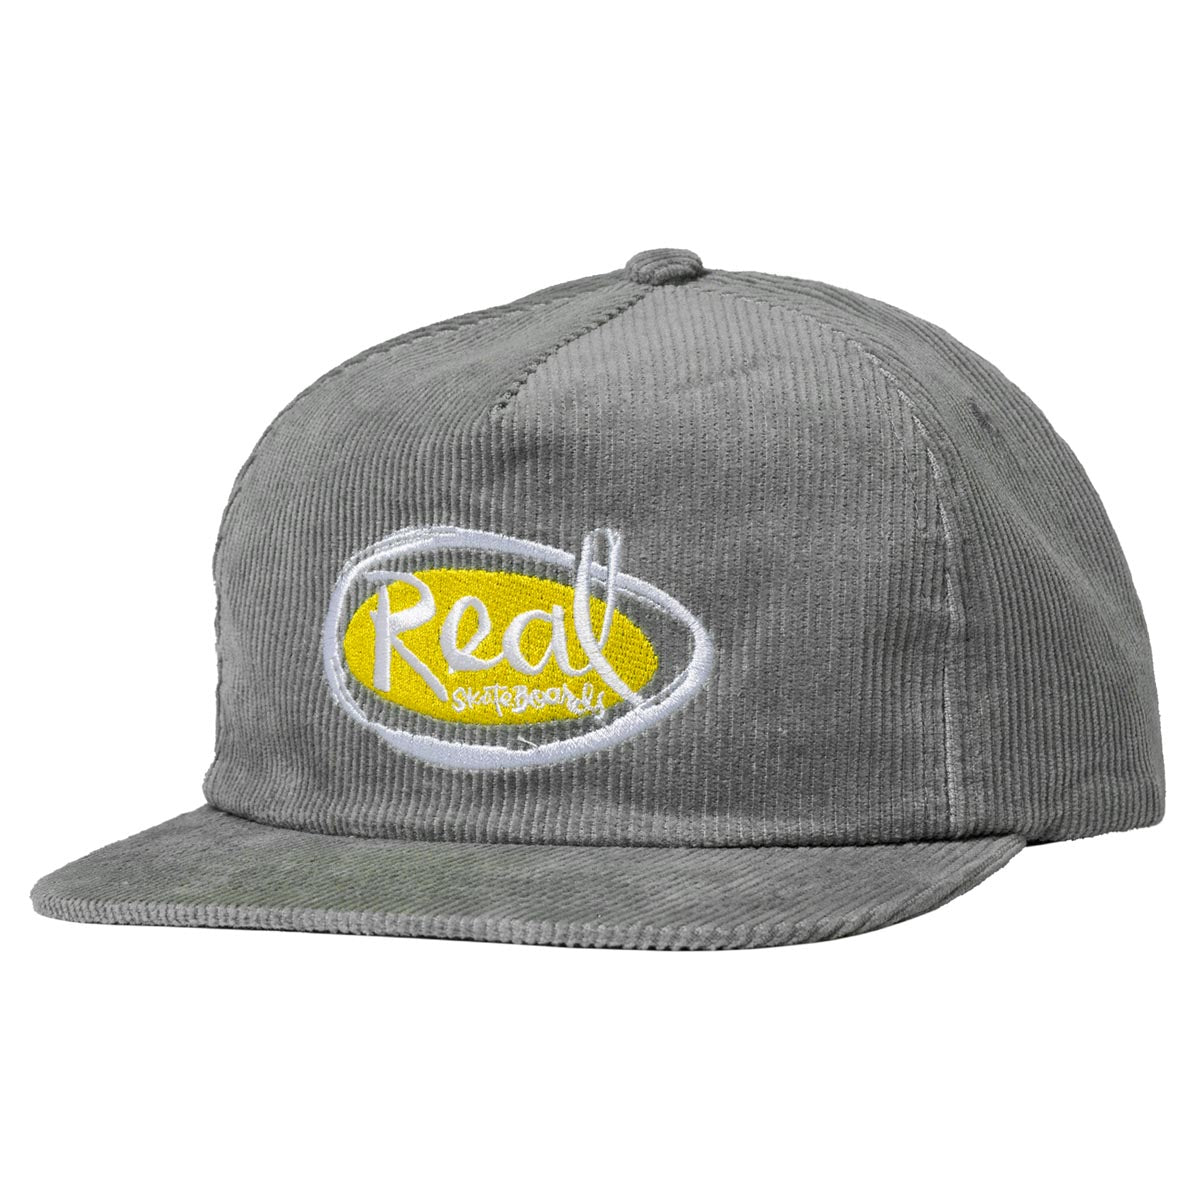 Real Natas Oval Snapback Hat - Grey image 1